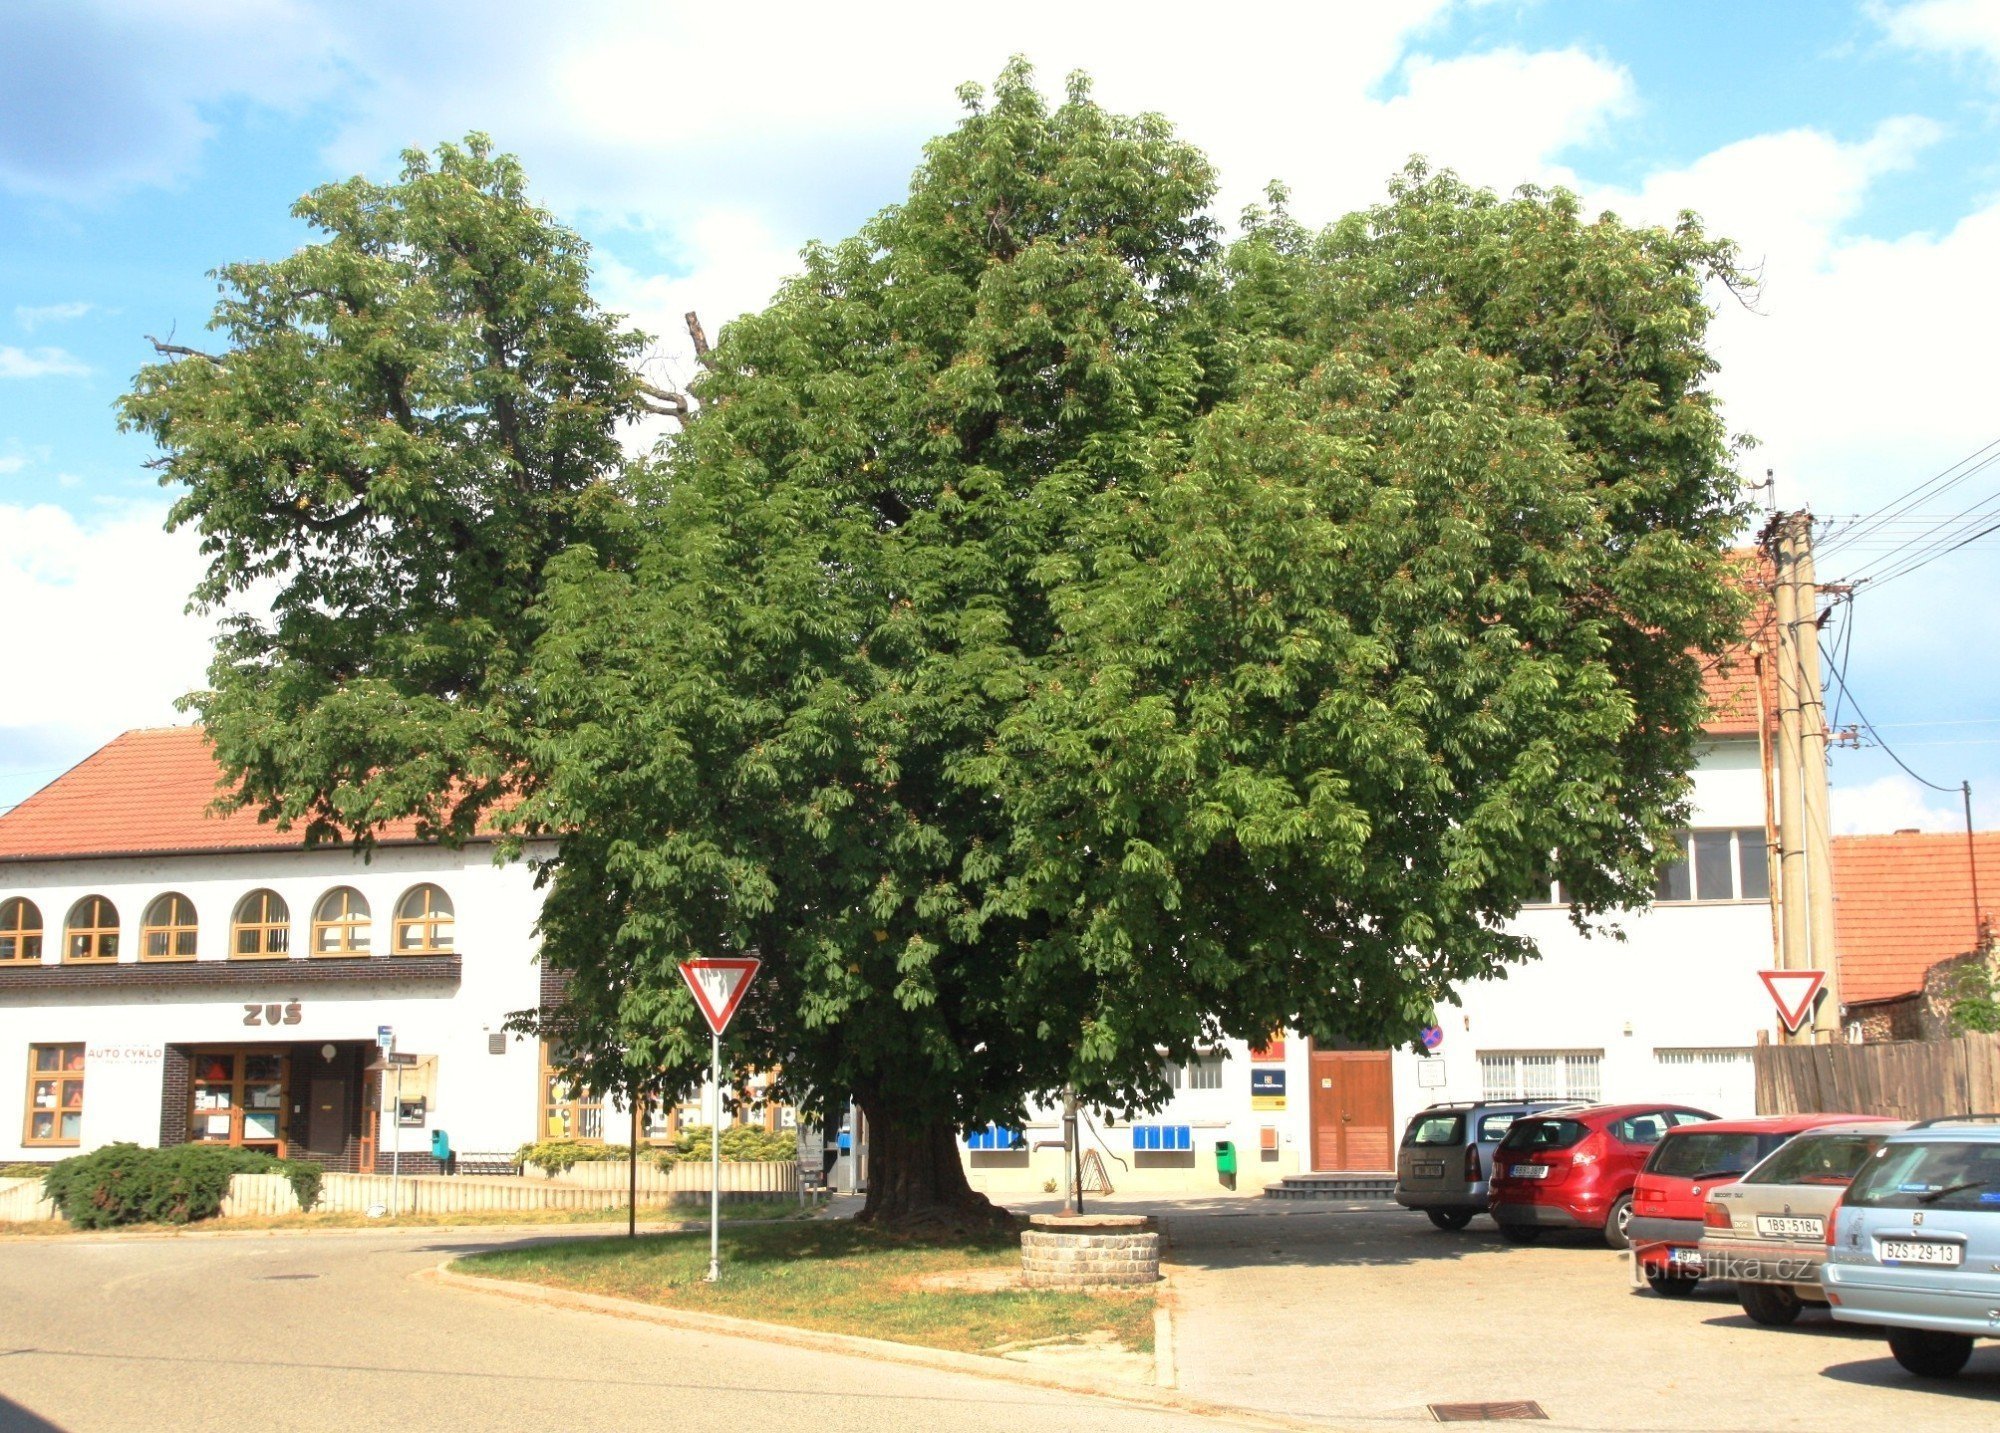 Veverská Bítýška - hạt dẻ của bưu điện